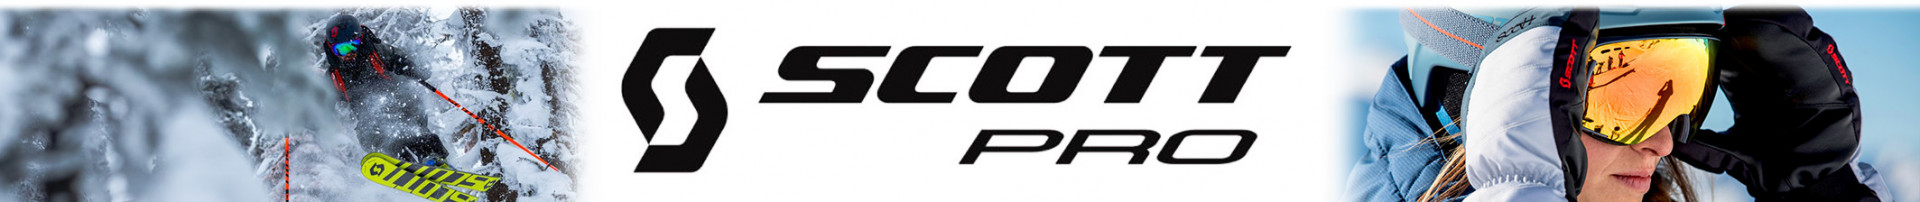 Logo Scott-pro